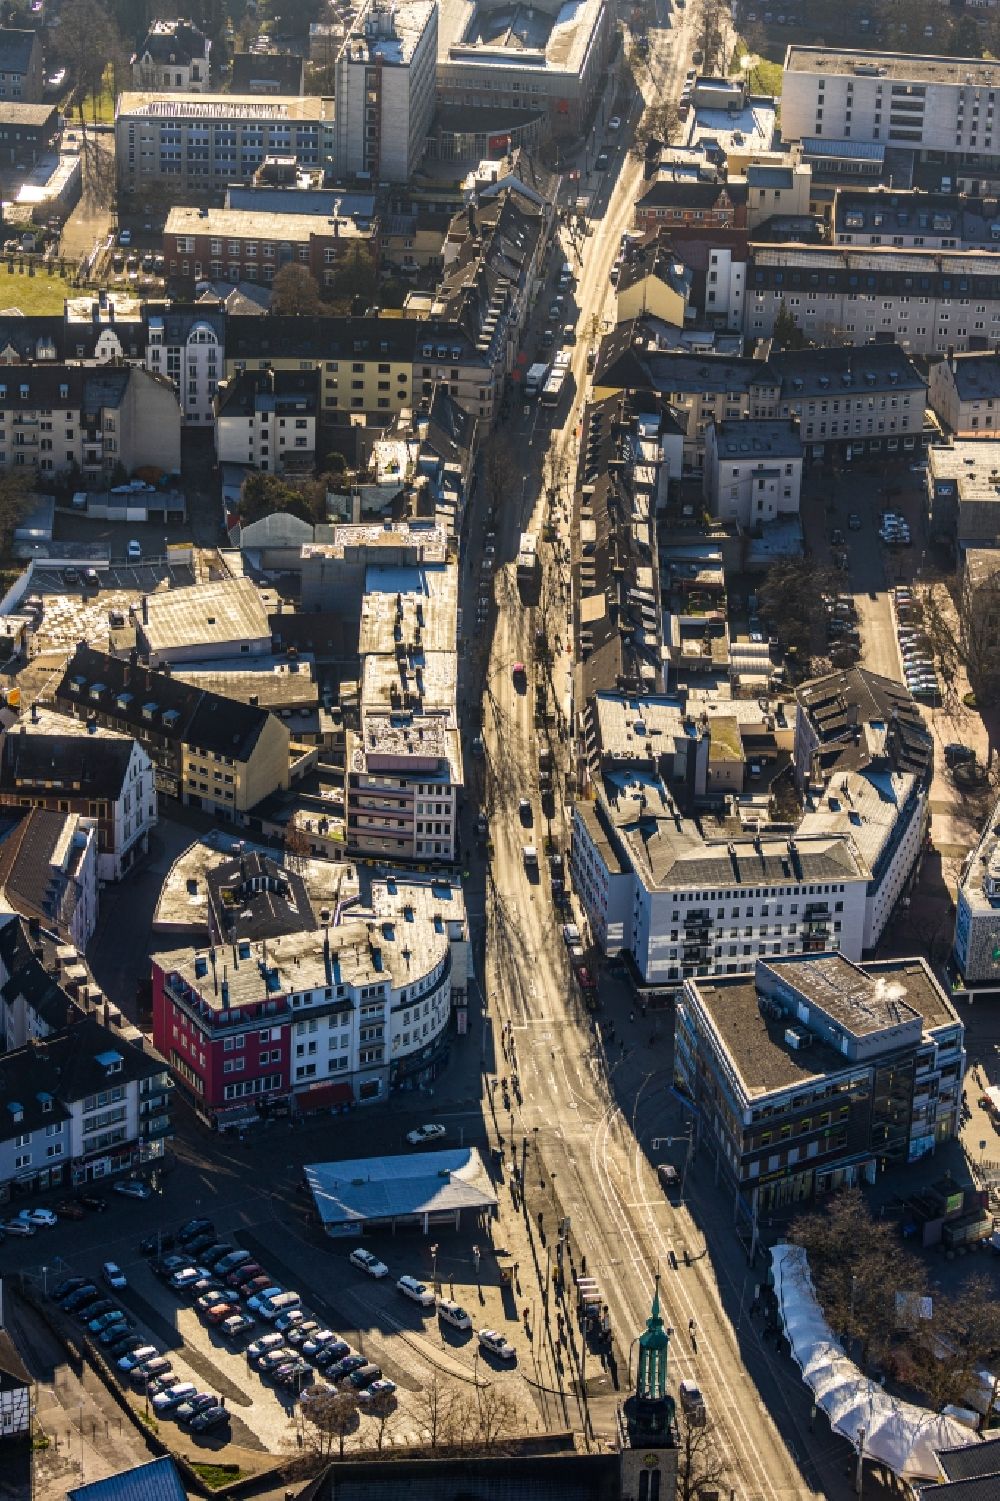 Luftaufnahme Witten - Straßenführung der bekannten Flaniermeile und Einkaufsstraße im Ortsteil Innenstadt in Witten im Bundesland Nordrhein-Westfalen, Deutschland